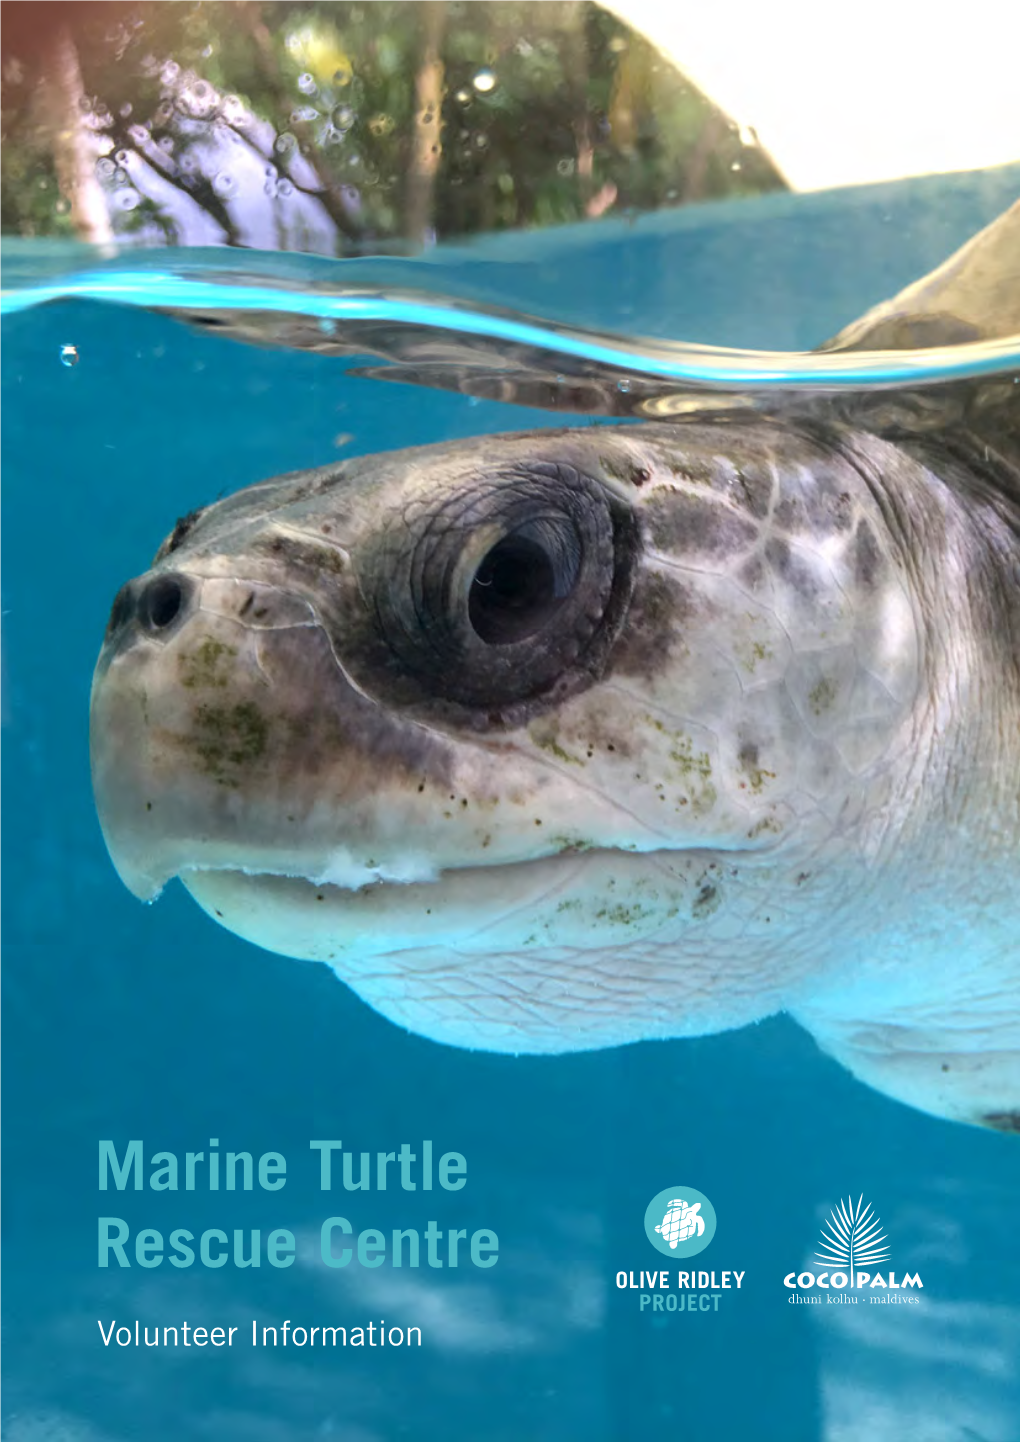 Marine Turtle Rescue Centre